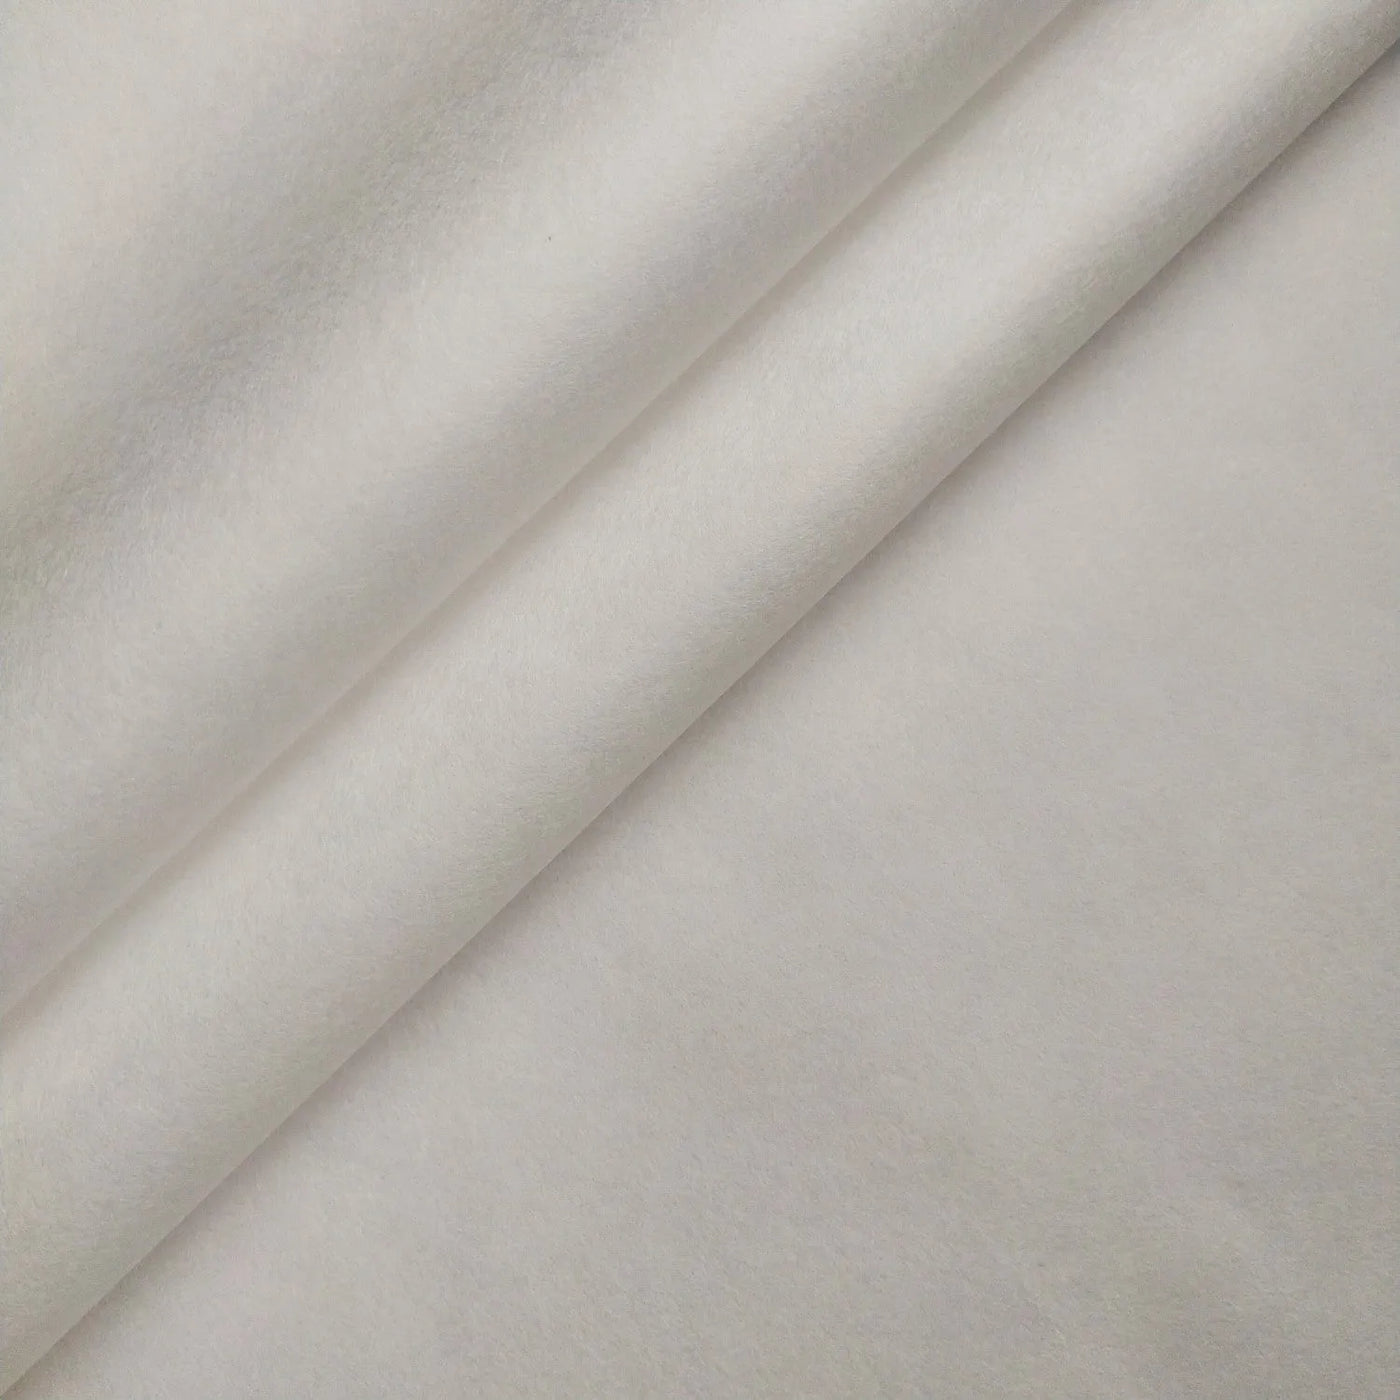 Thin White Kozo Paper (45 gsm, 64x94 cm), Kozo Studio